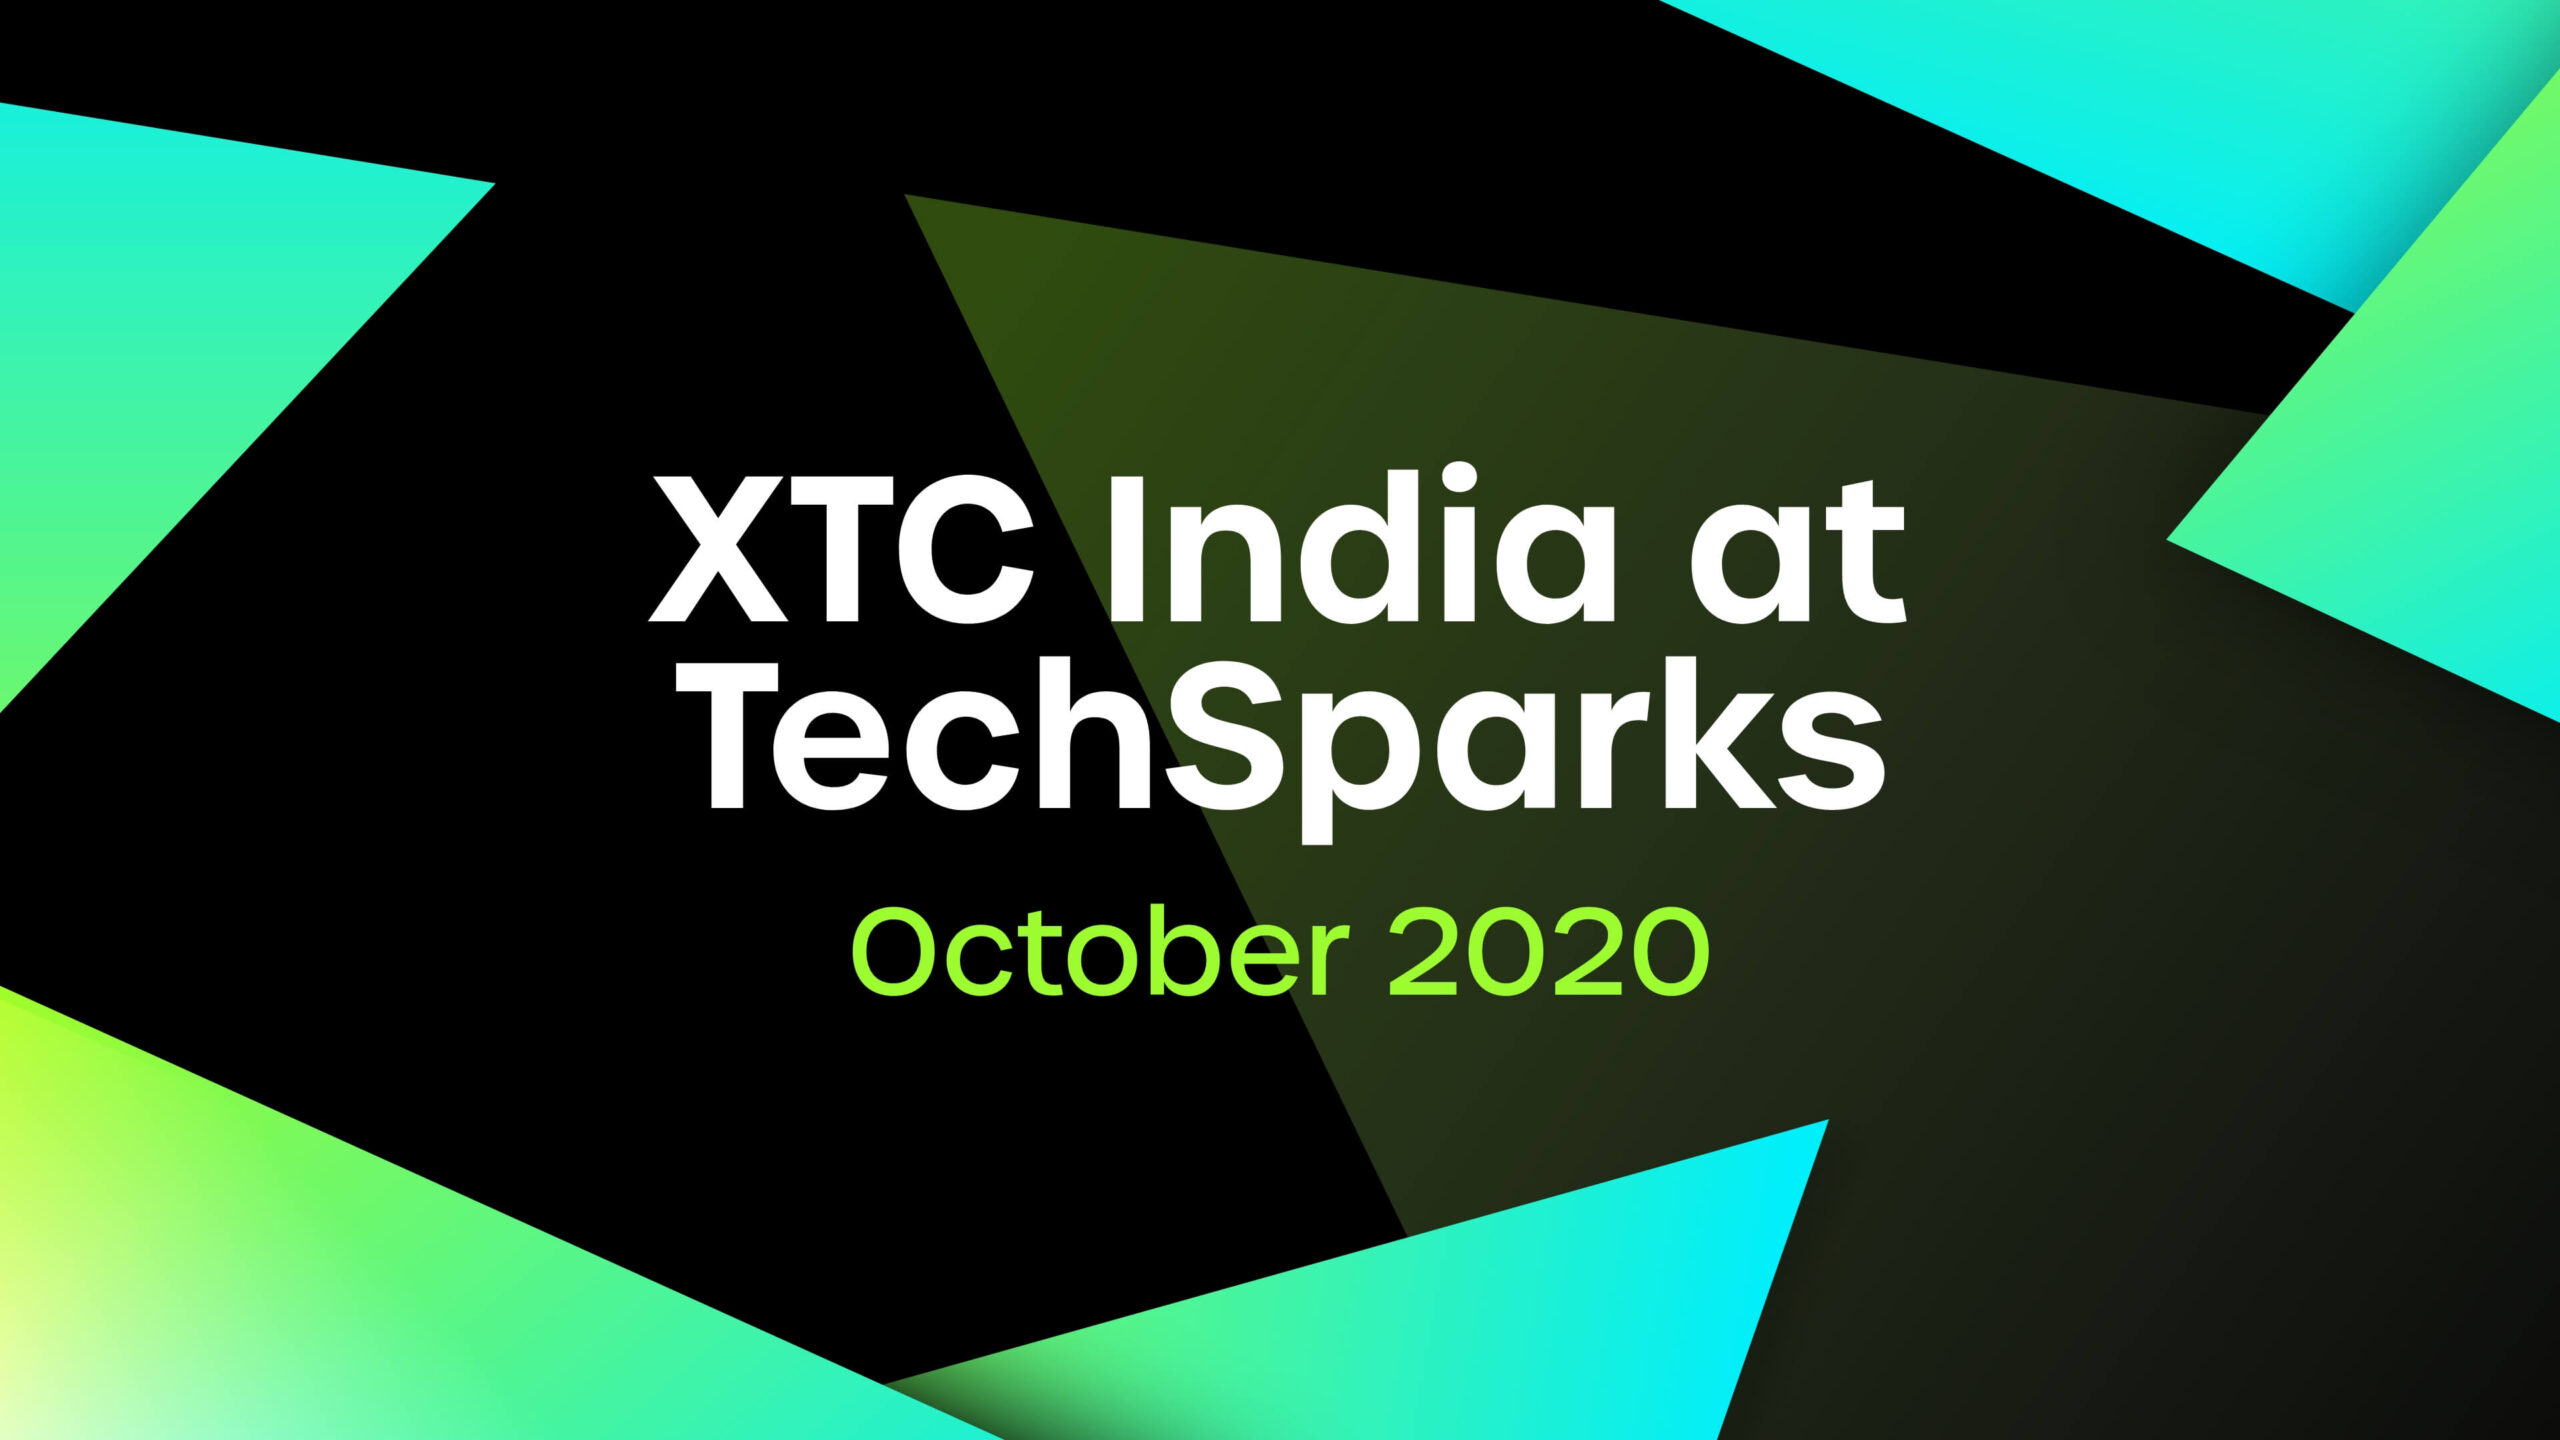 XTC India at TechSparks